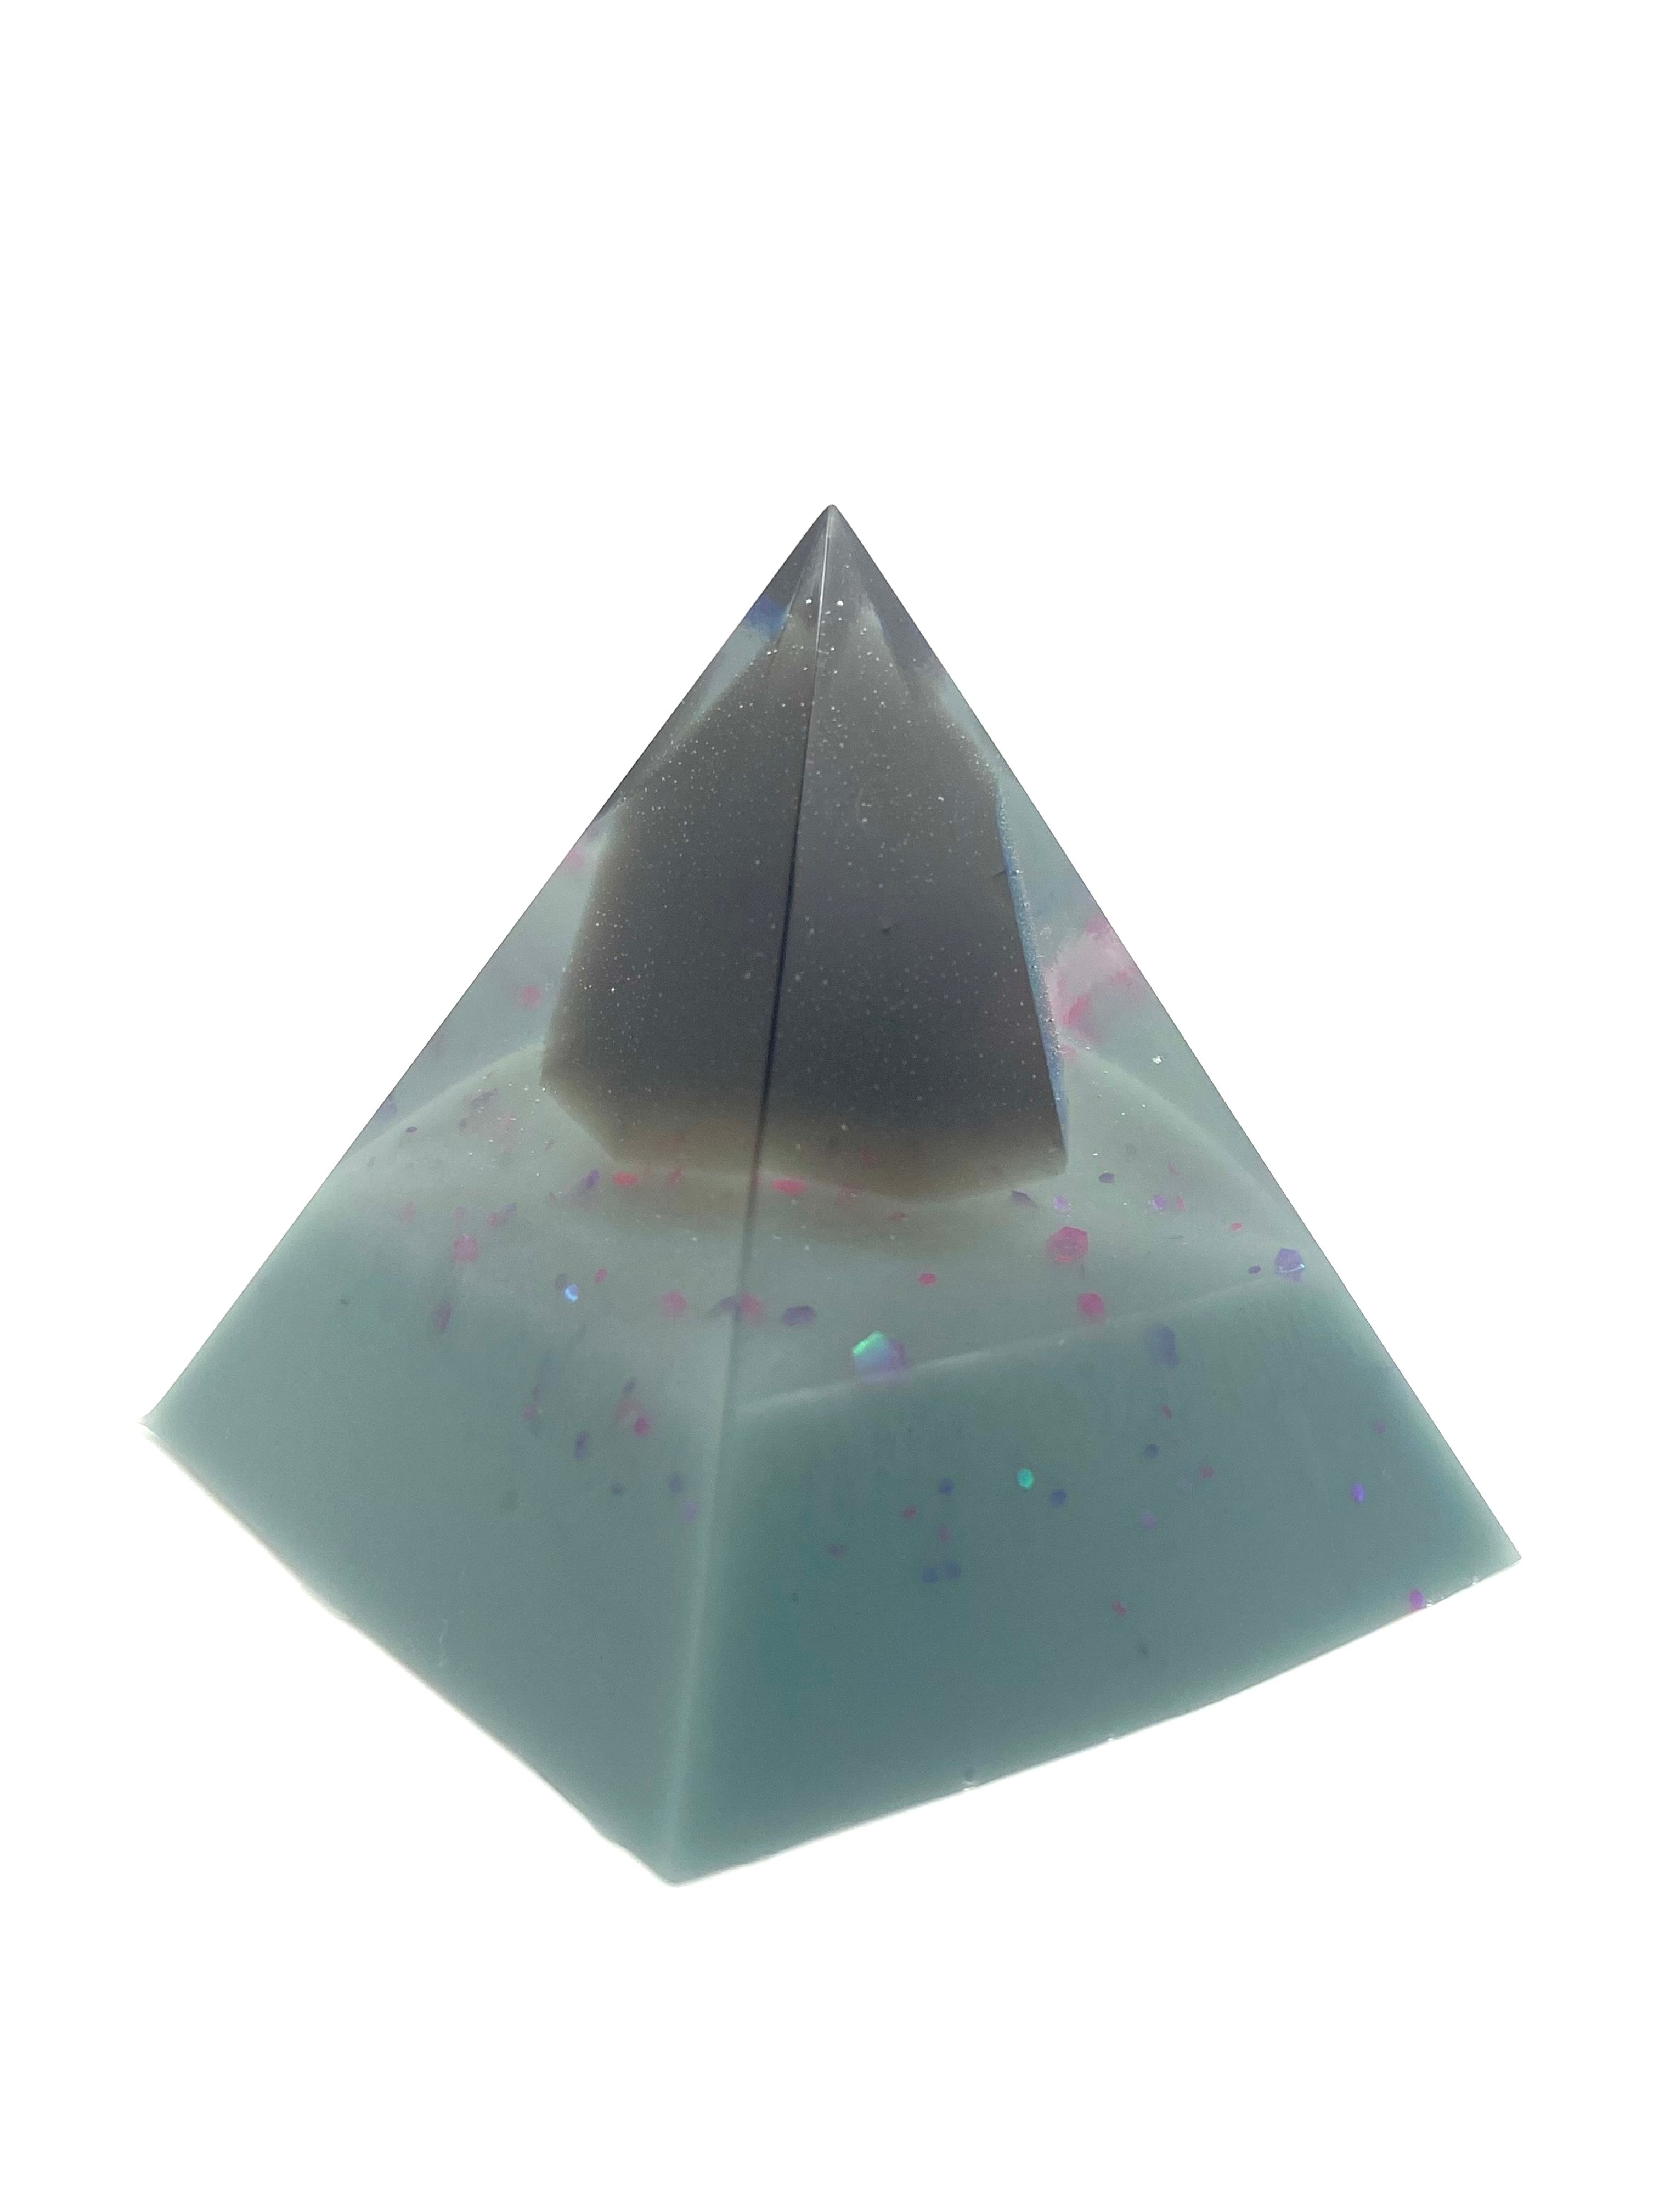 Smoky Quartz Pyramid